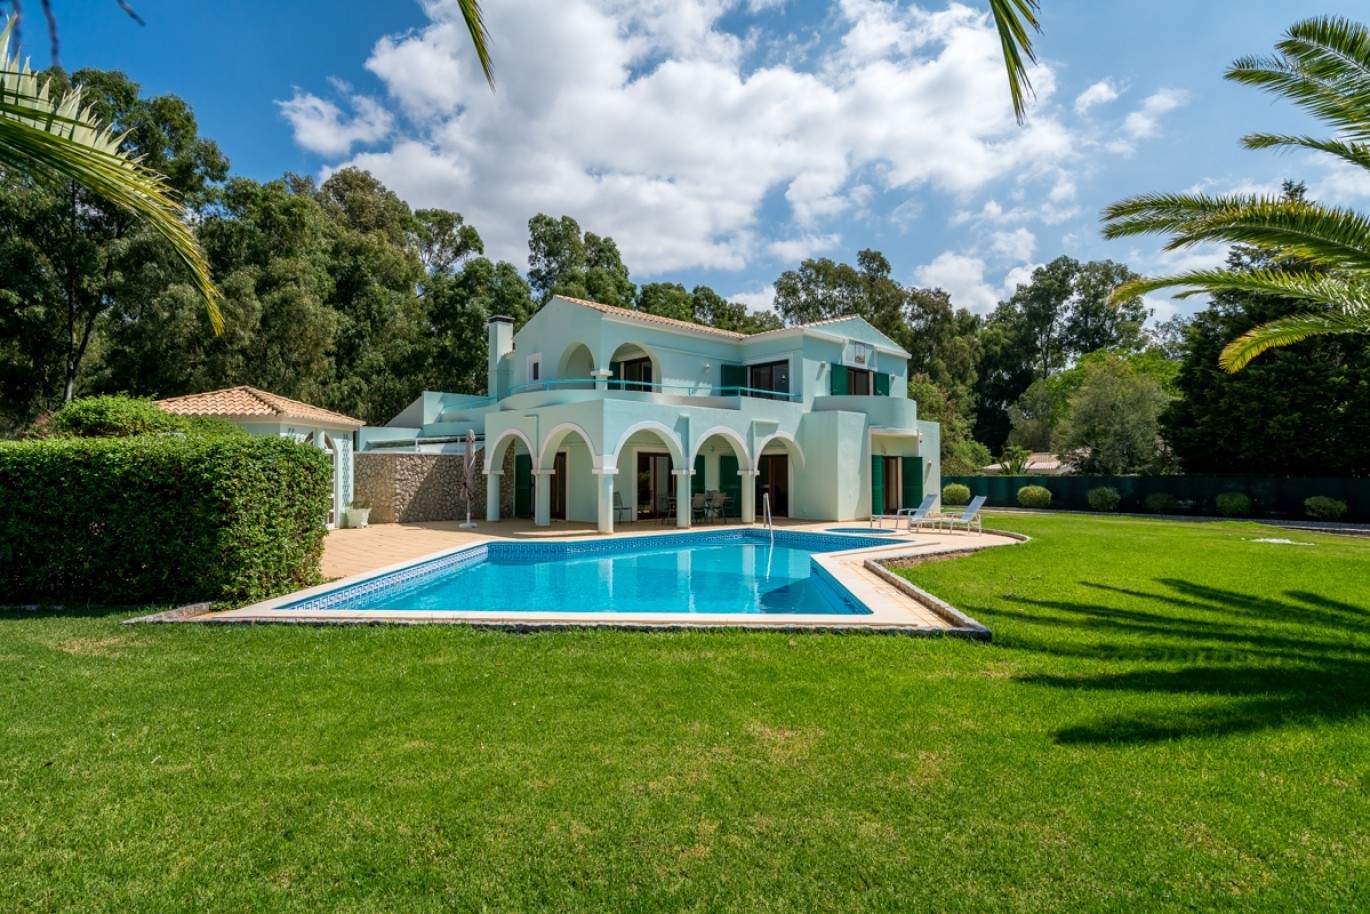 Verkauf Villa mit pool und Garten in Penina Alvor, Algarve, Portugal_83415